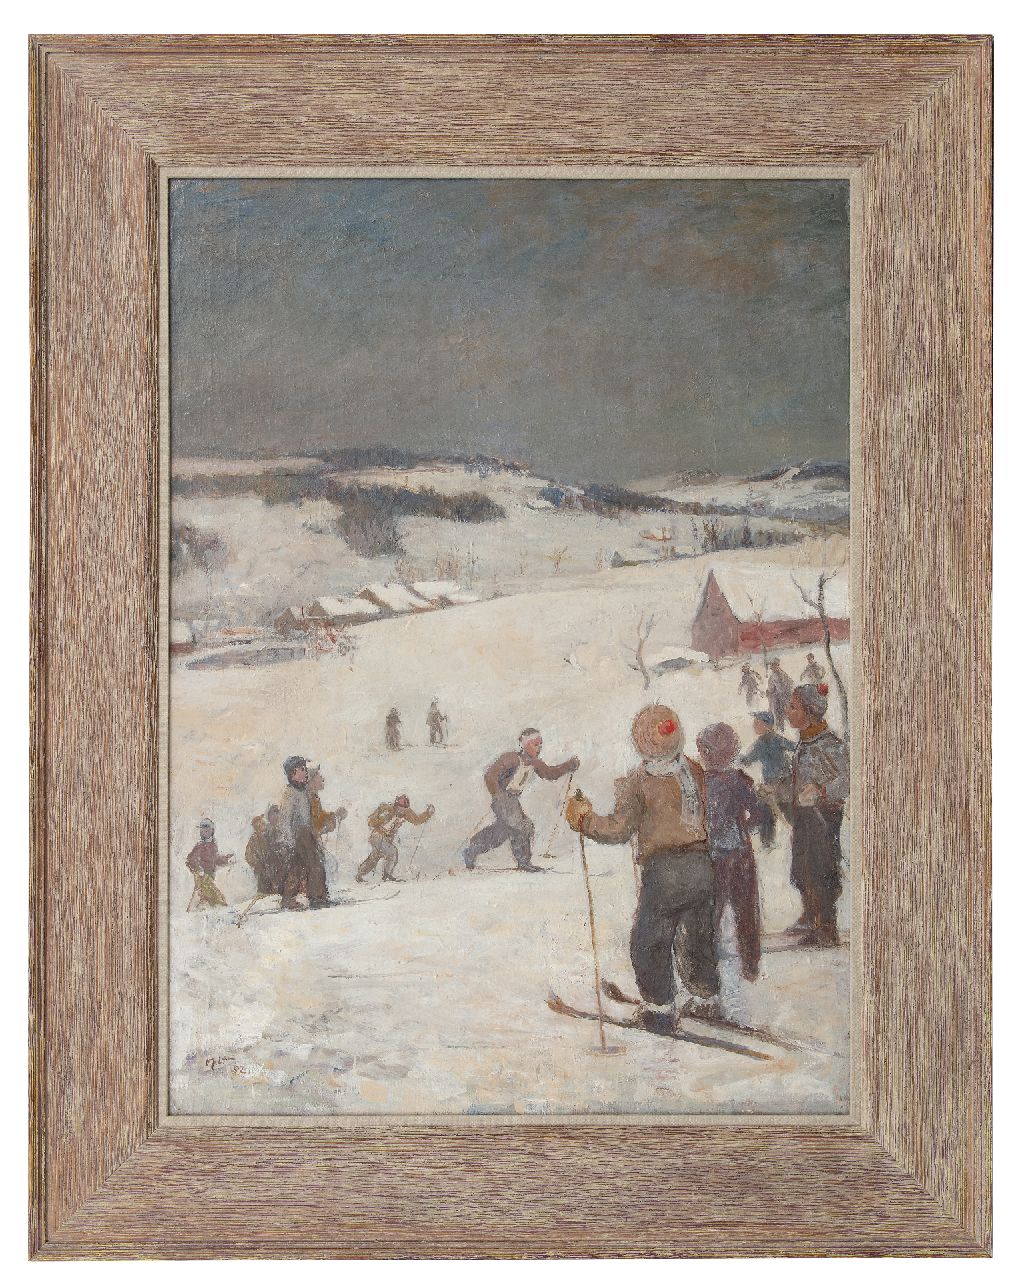 Oplt O.  | Oldřich Oplt | Schilderijen te koop aangeboden | De skiloopwedstrijd, olieverf op doek 99,7 x 72,8 cm, gesigneerd linksonder en gedateerd '52